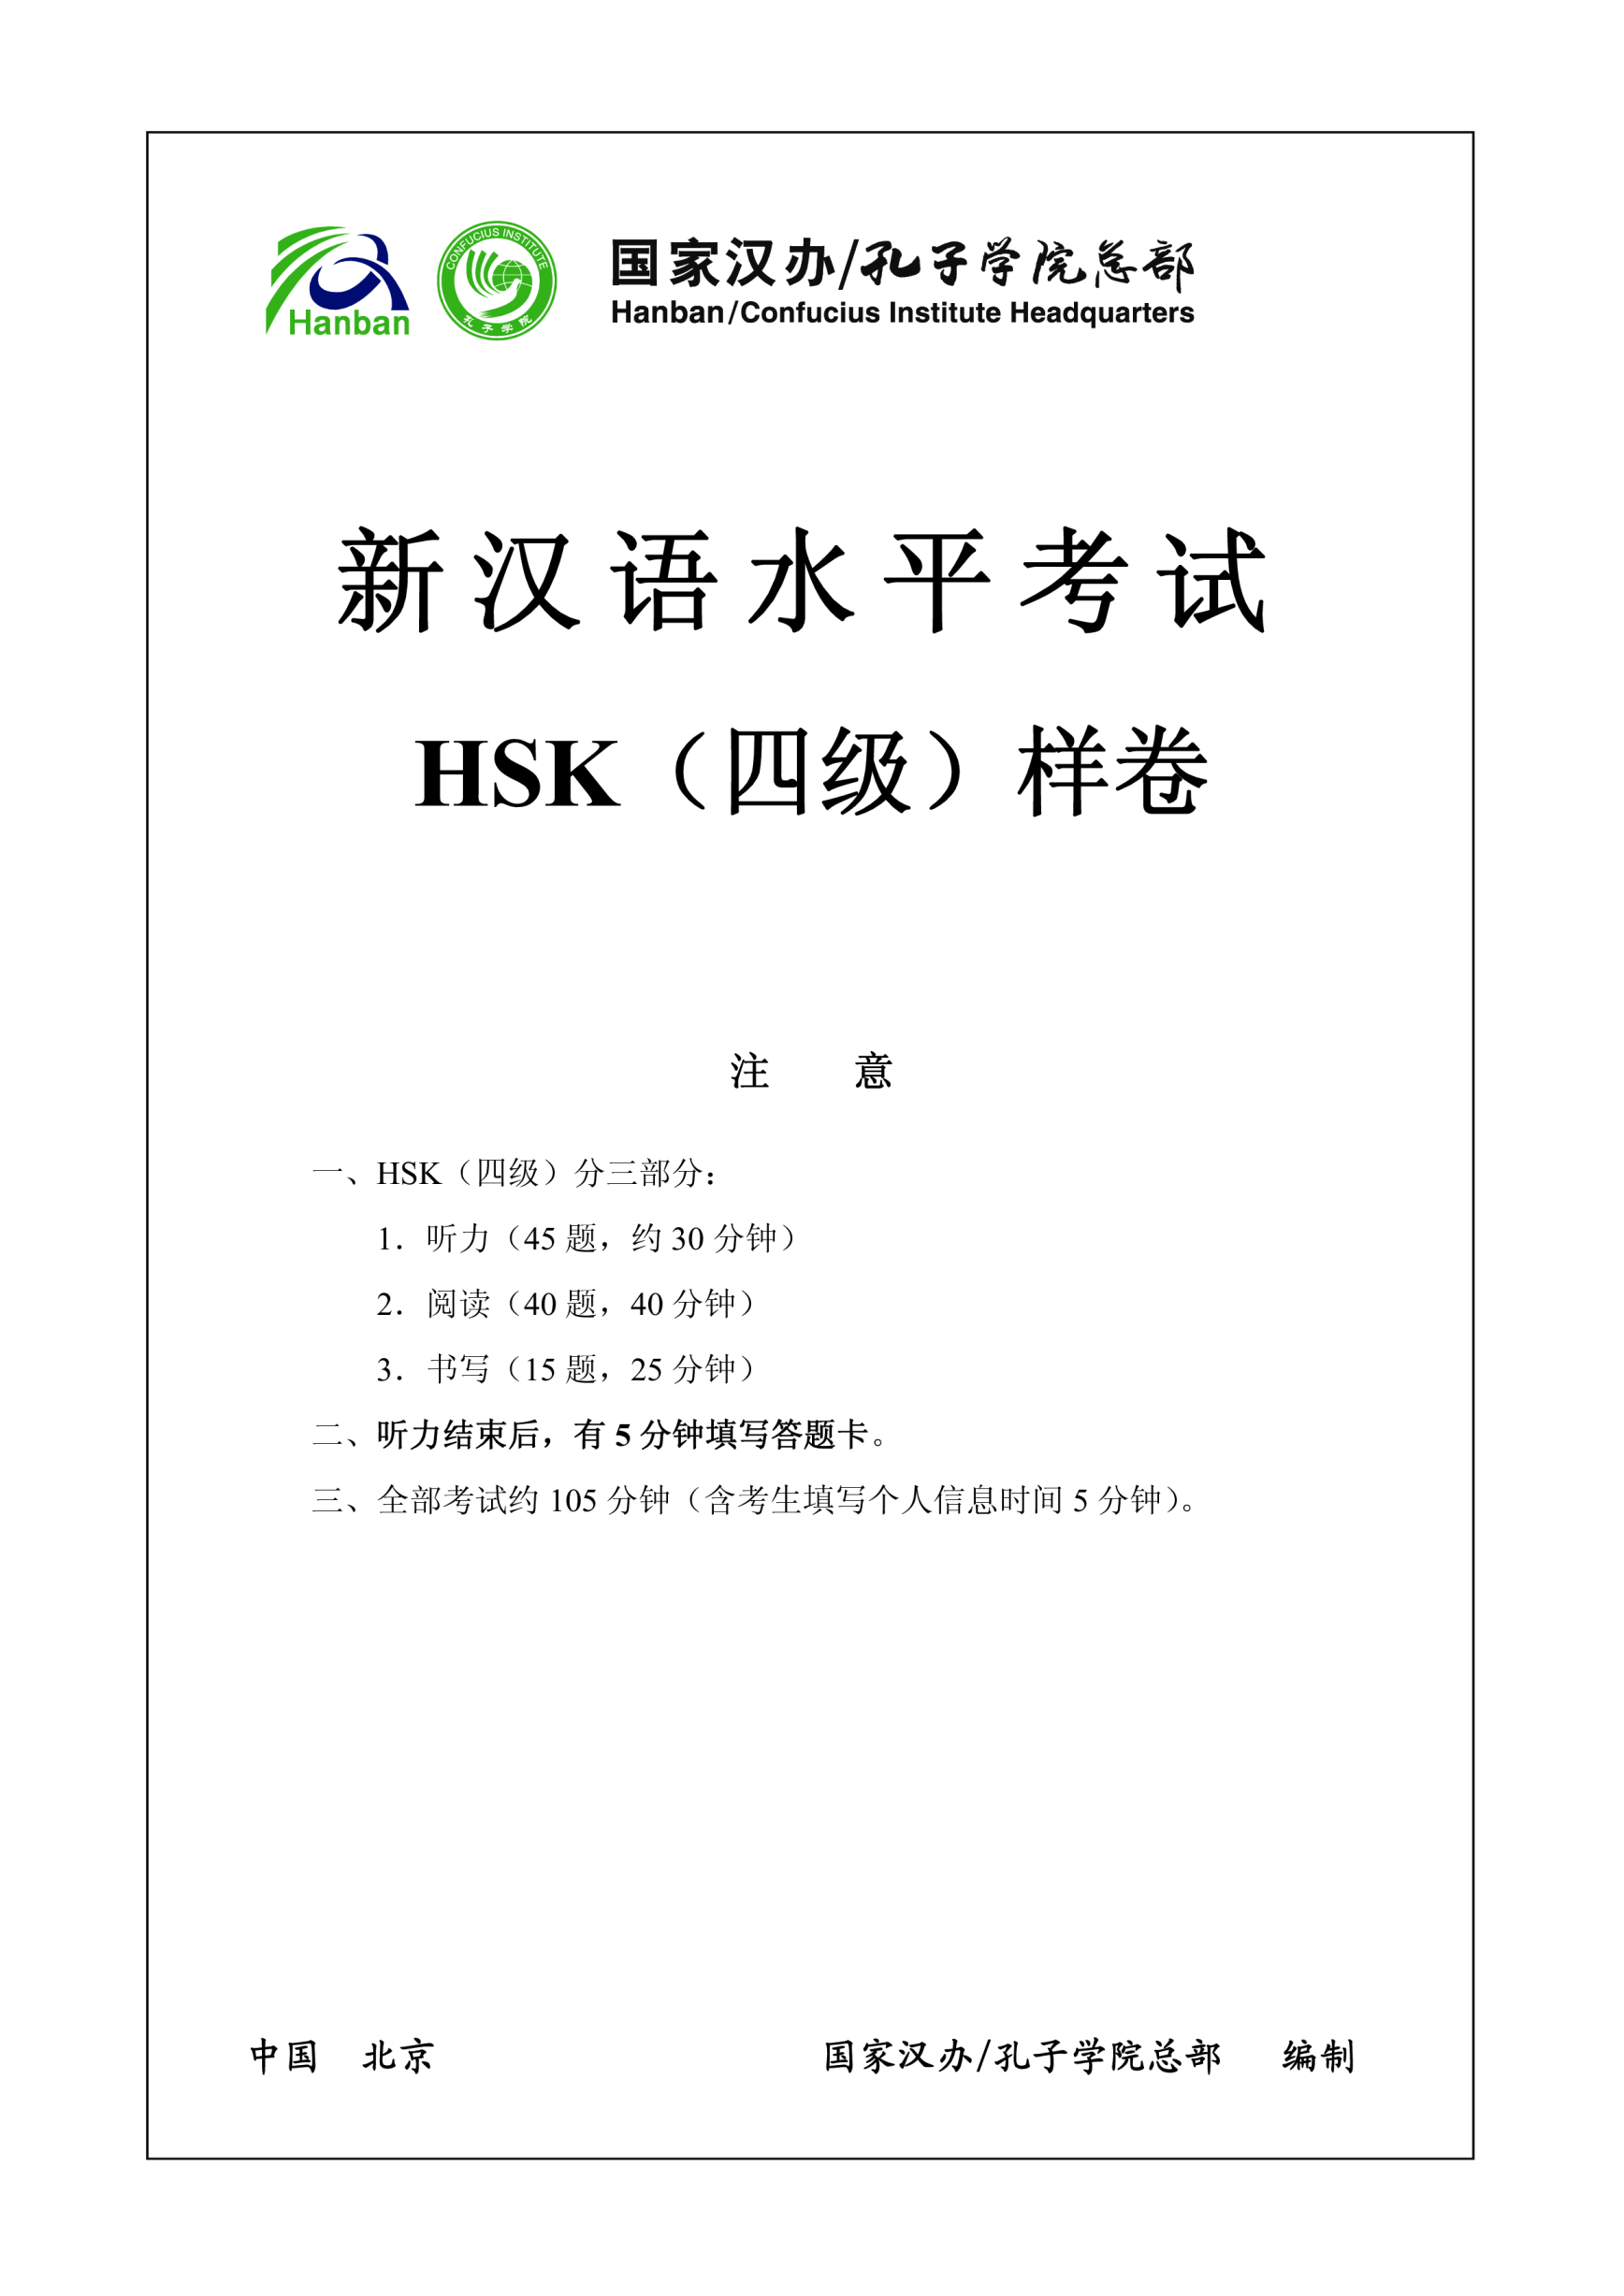 Vorschaubild der VorlageHSK4 Chinese Words Test Exam and Answers example 2